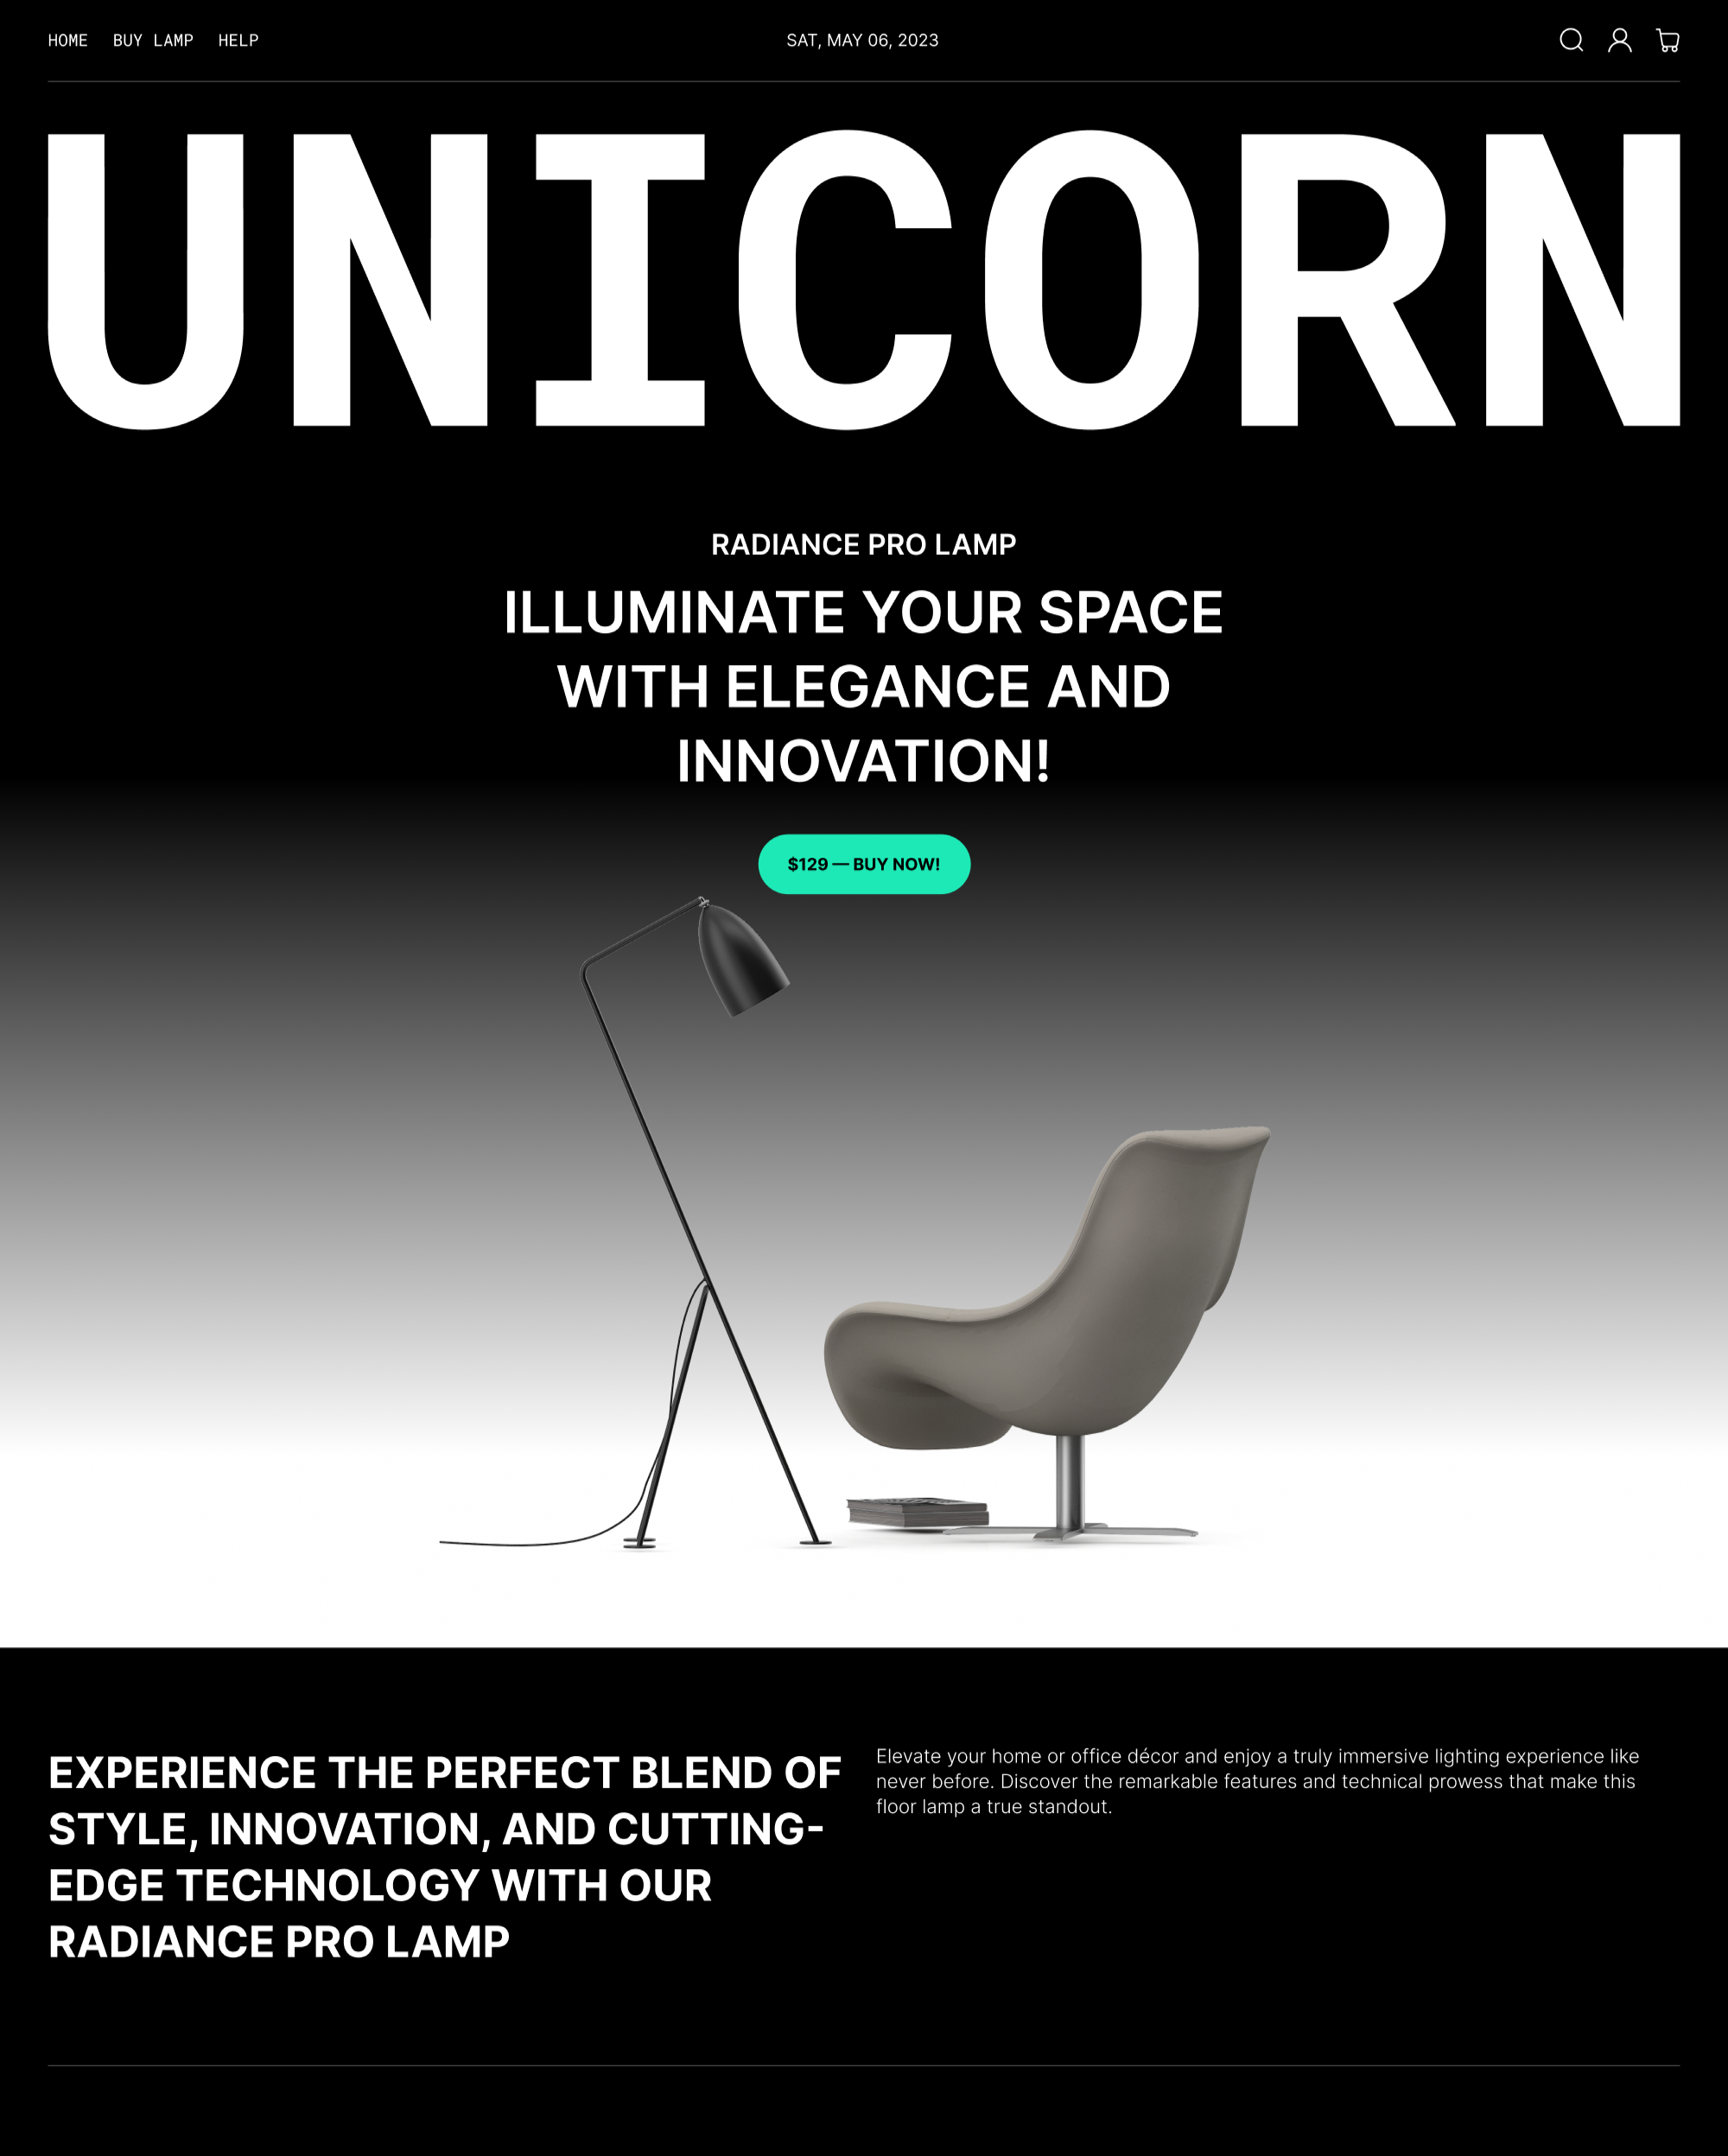 Náhled motivu Unicorn ve stylu Dark pro počítače